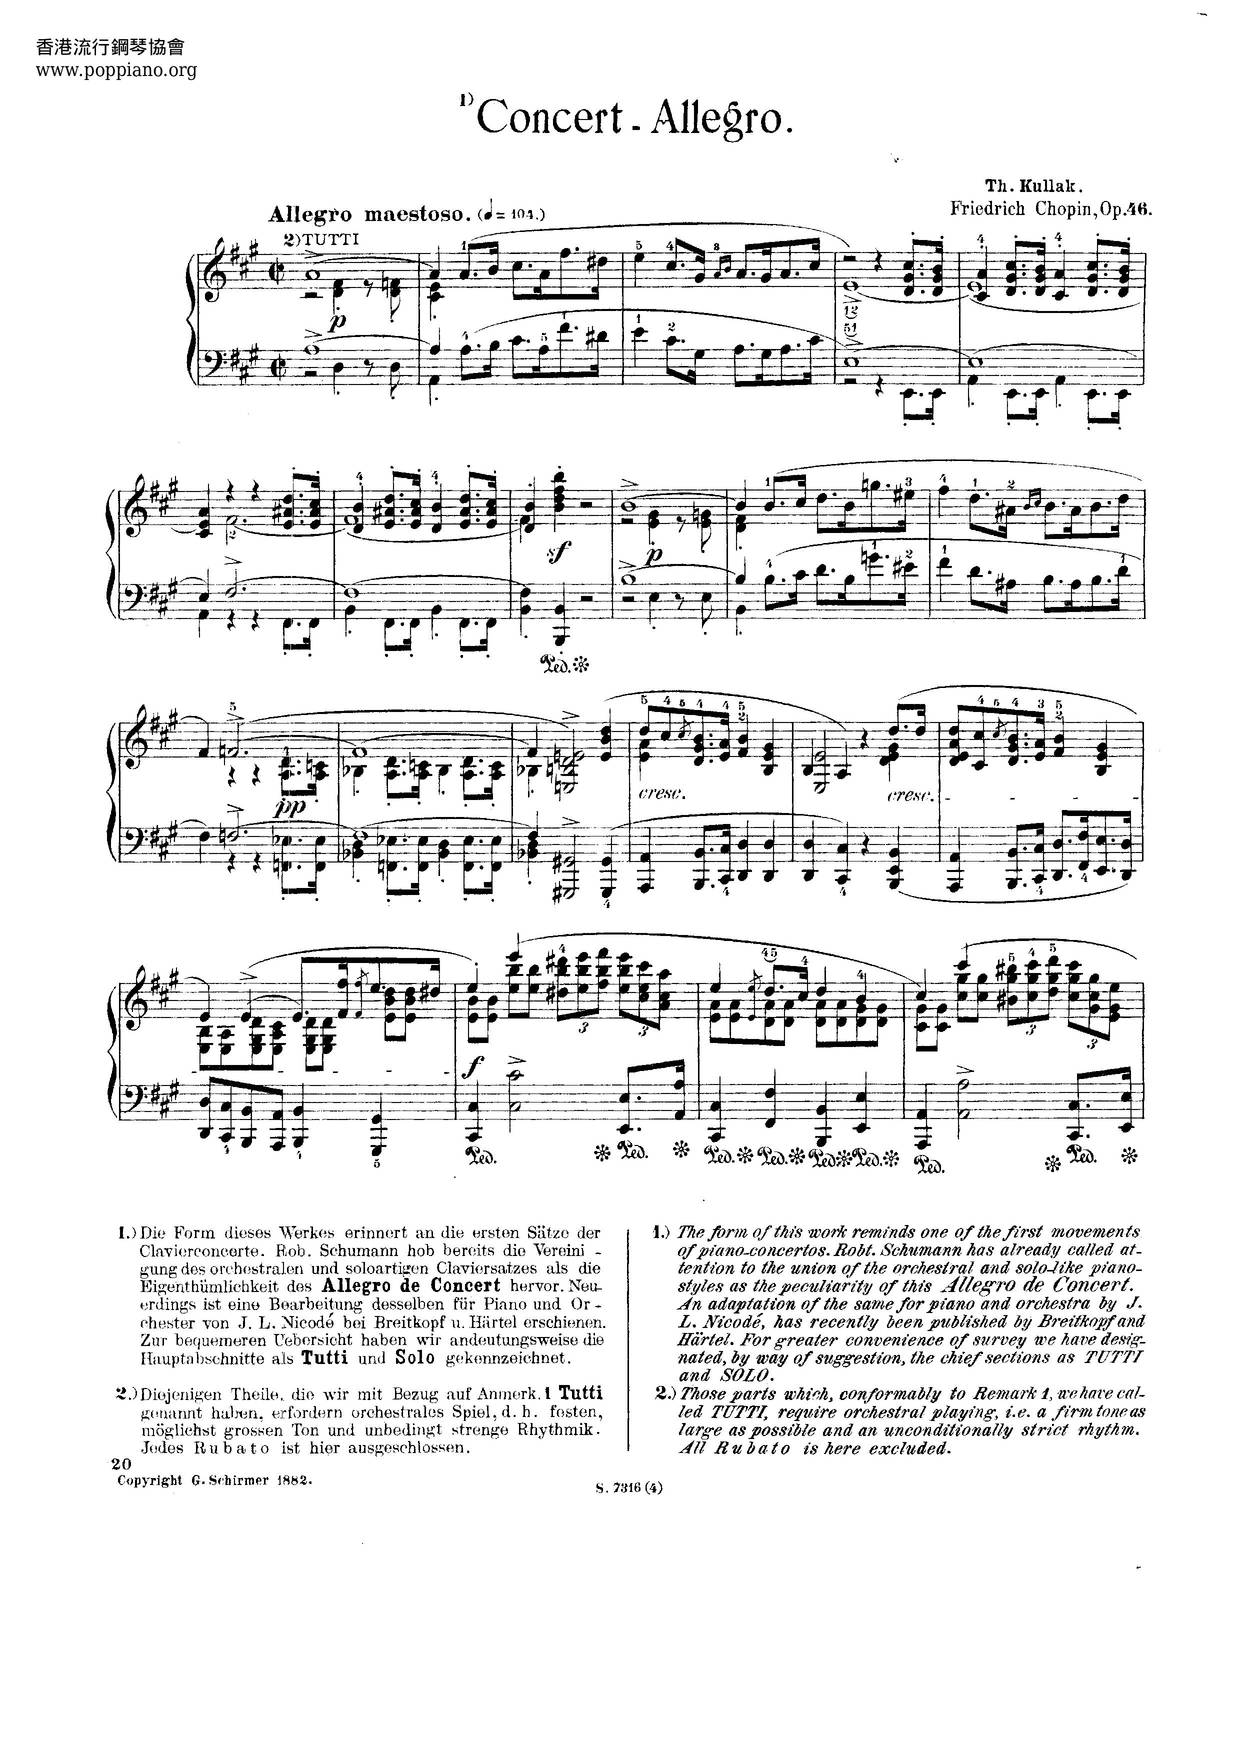 Allegro De Concert, Op. 46 Score